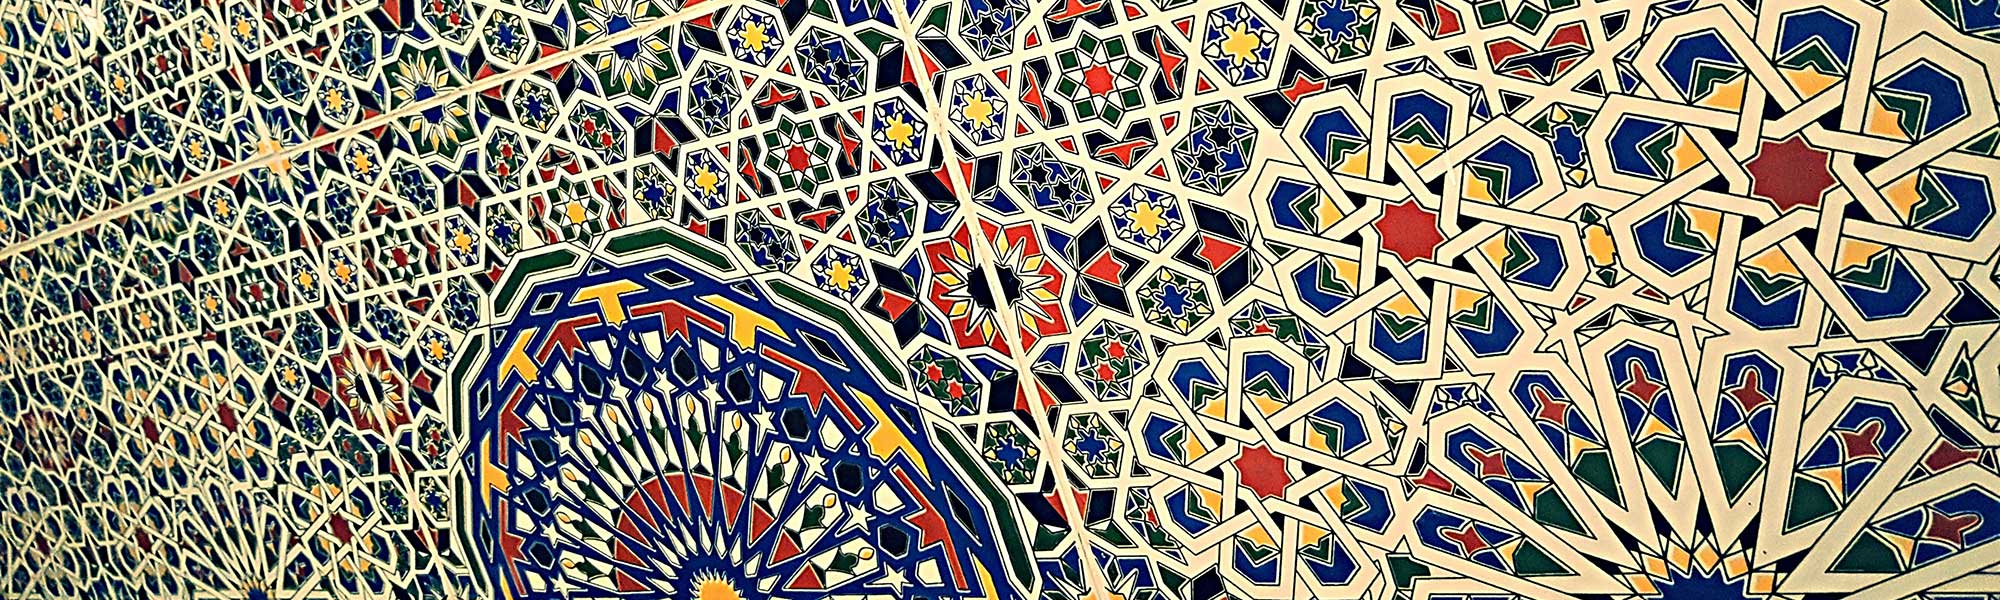 Coloured tiles